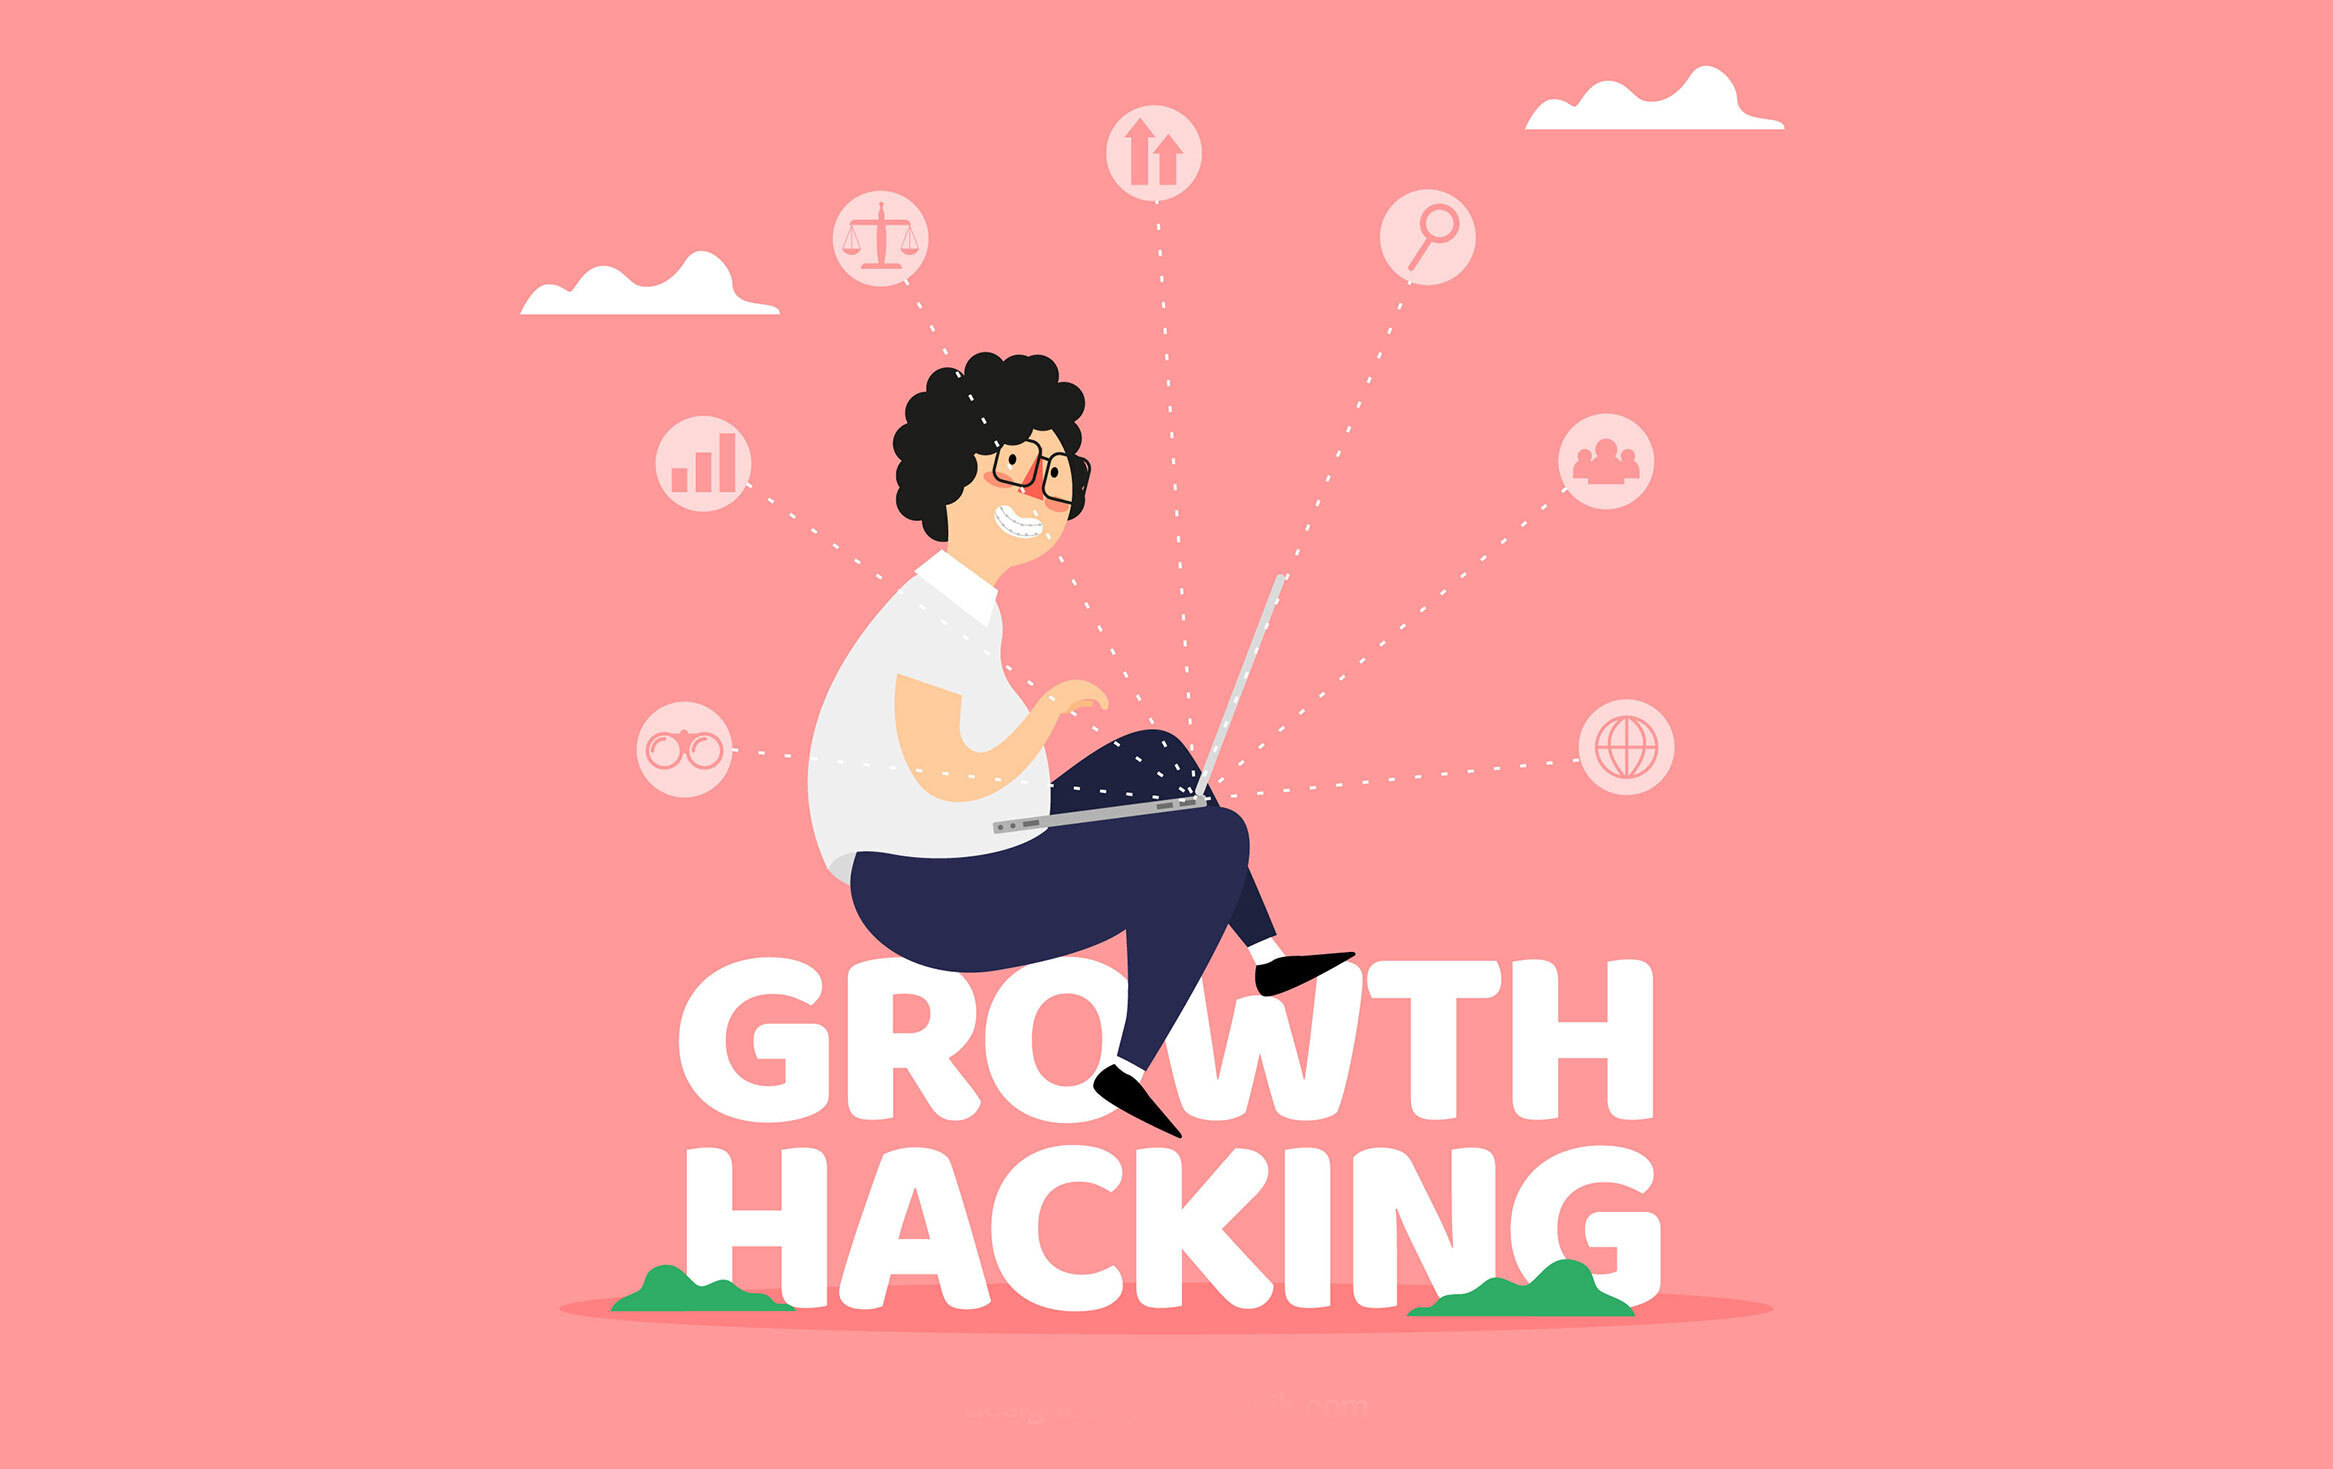 Comment utiliser le growth hacking pour booster vos ventes rapidement